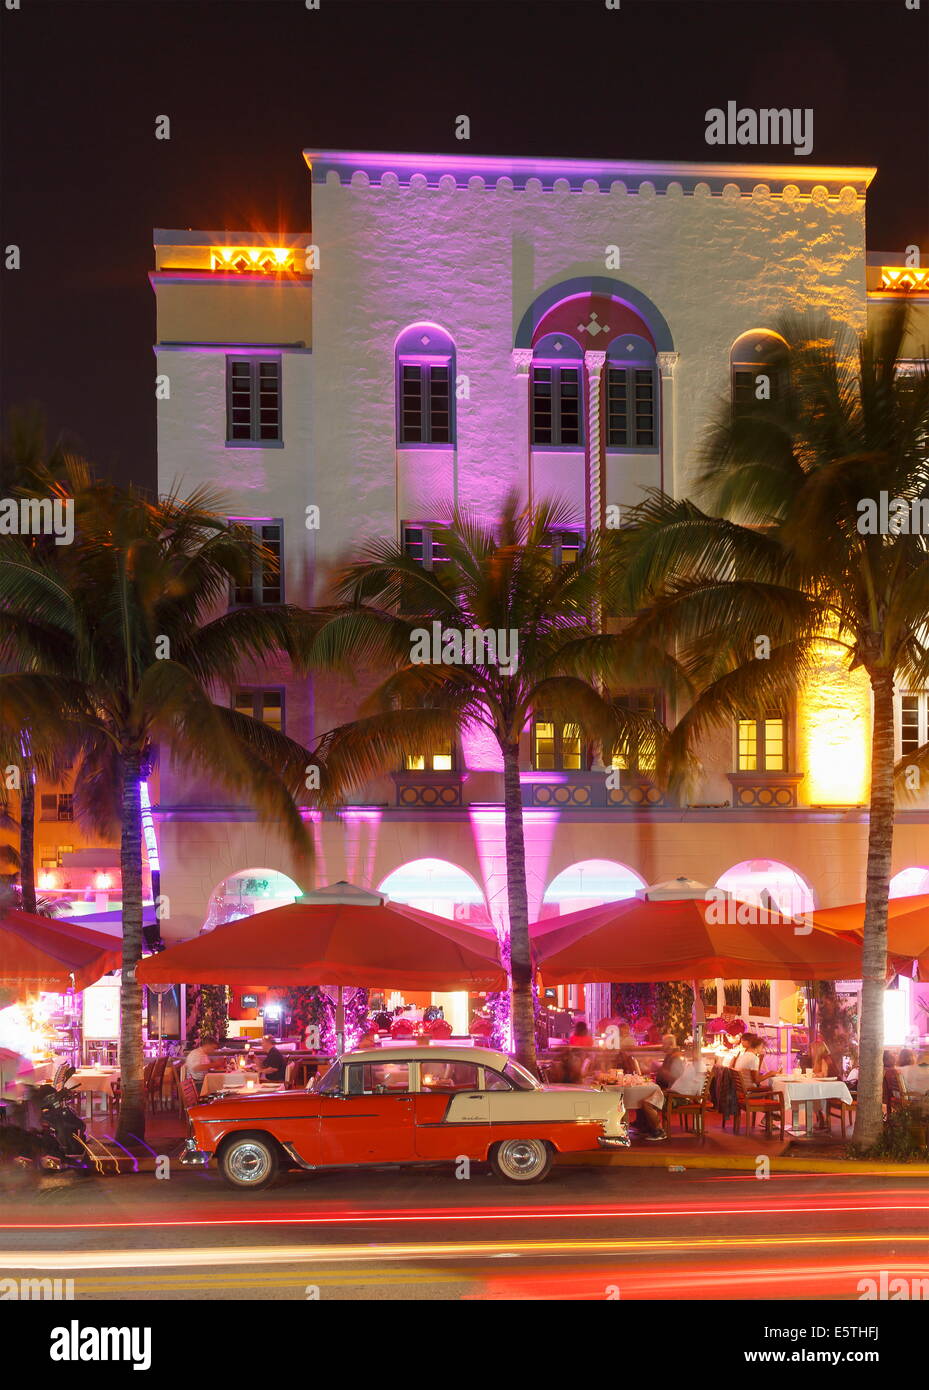 Art-Deco-Viertel, Ocean Drive, South Beach, Miami Beach, Florida, Vereinigte Staaten von Amerika, Nordamerika Stockfoto